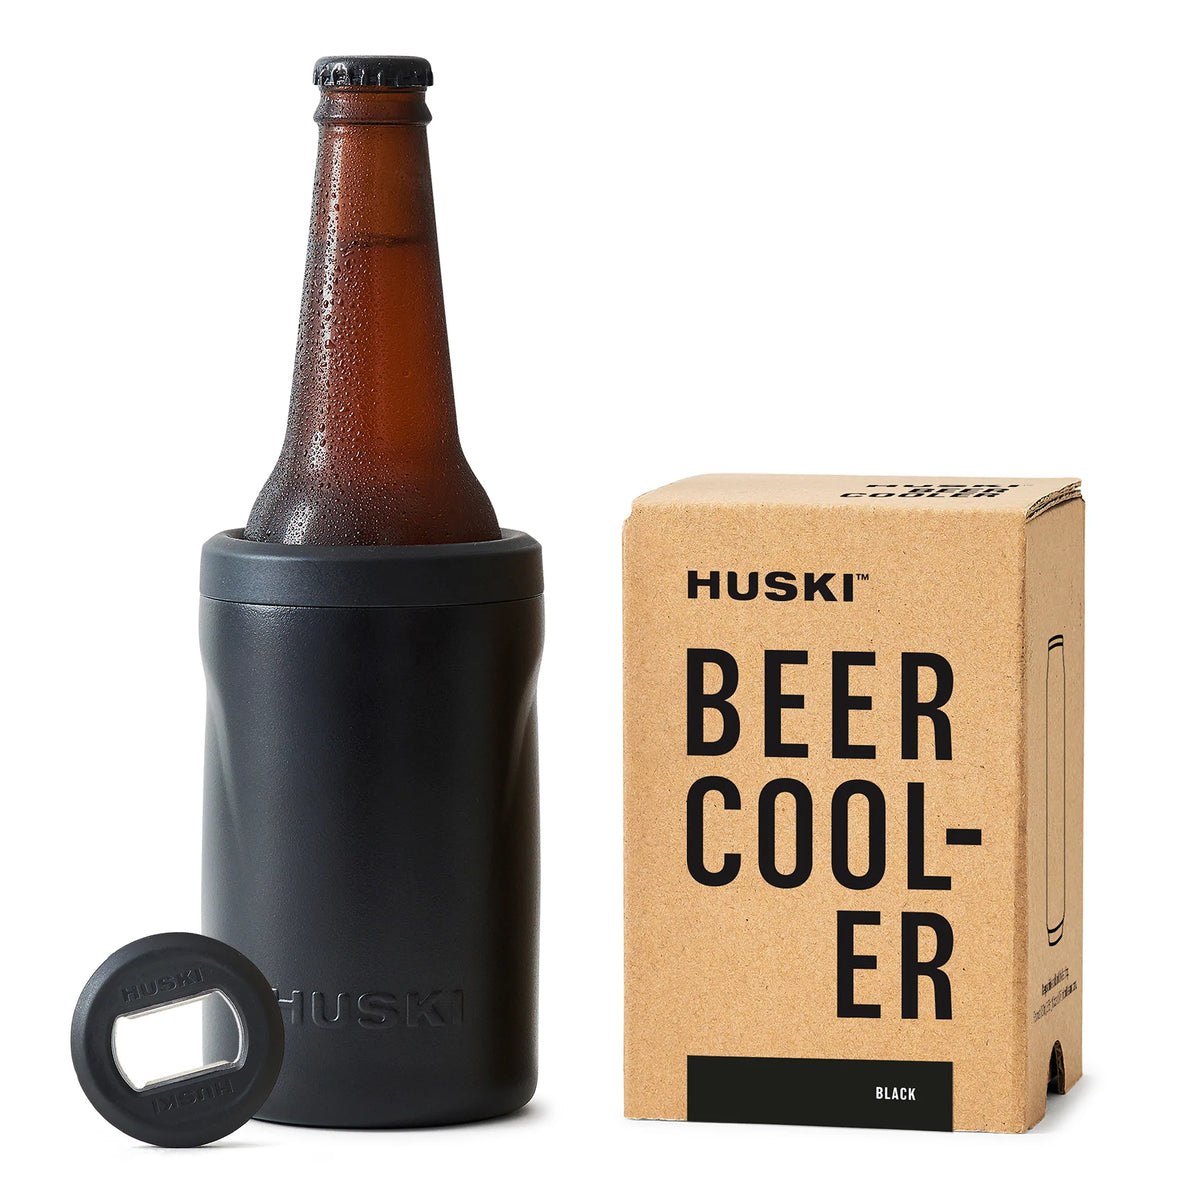 Huski Beer cooler 2.0 - Black – The Hunted Co